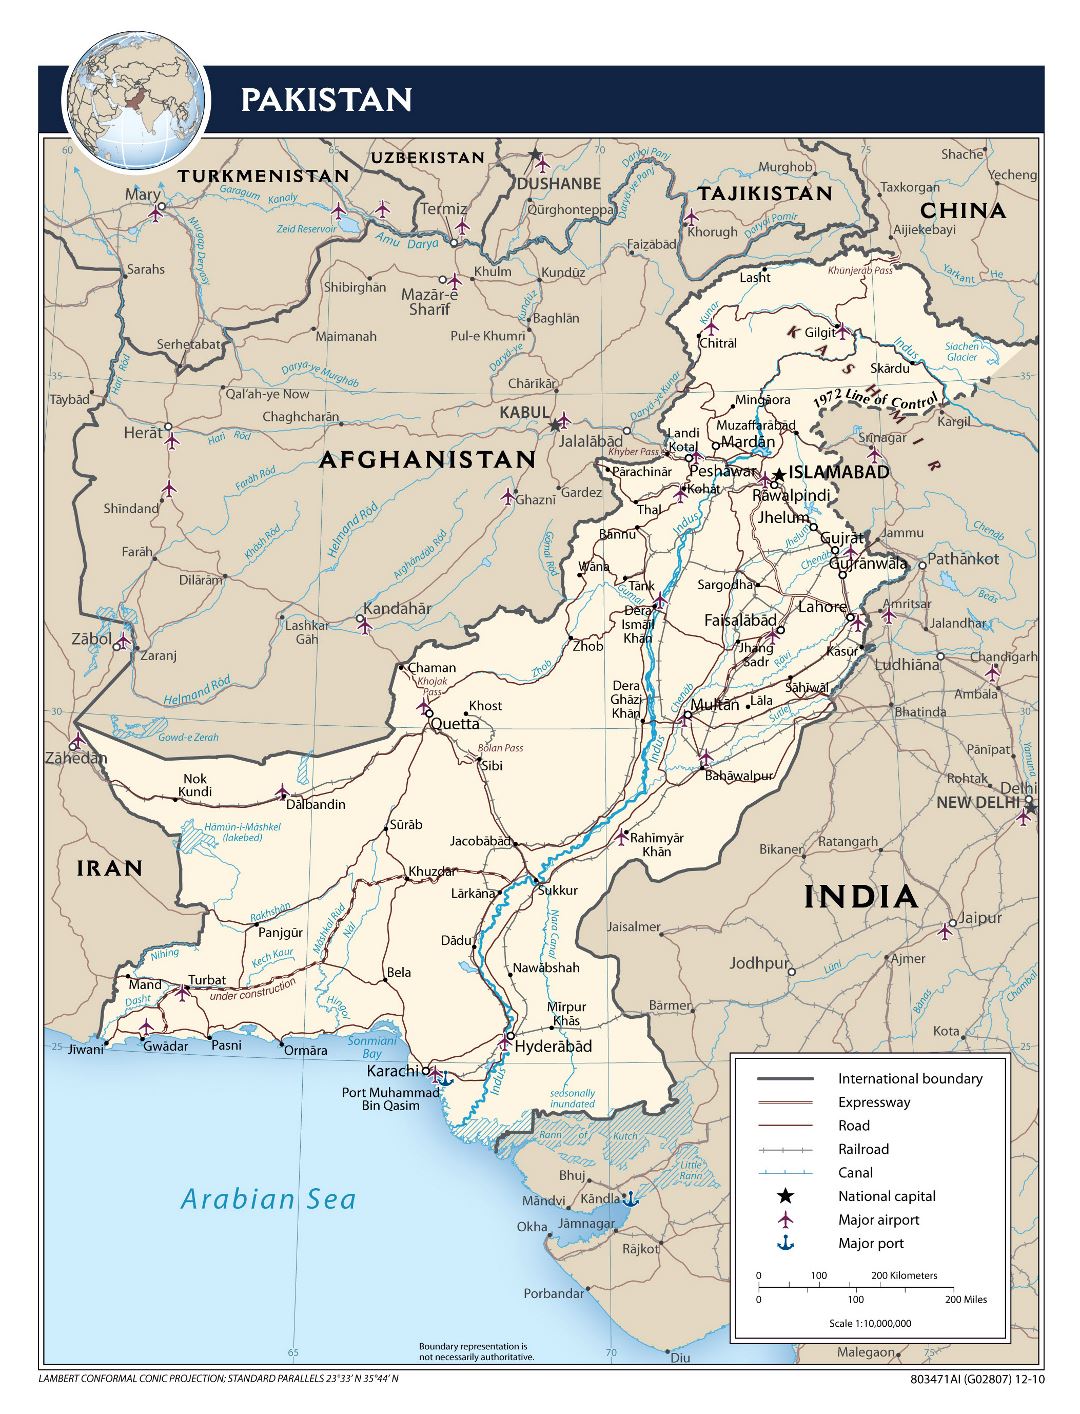 Grande mapa político de Pakistán con carreteras, ferrocarriles, ciudades, aeropuertos, puertos y otras marcas - 2010